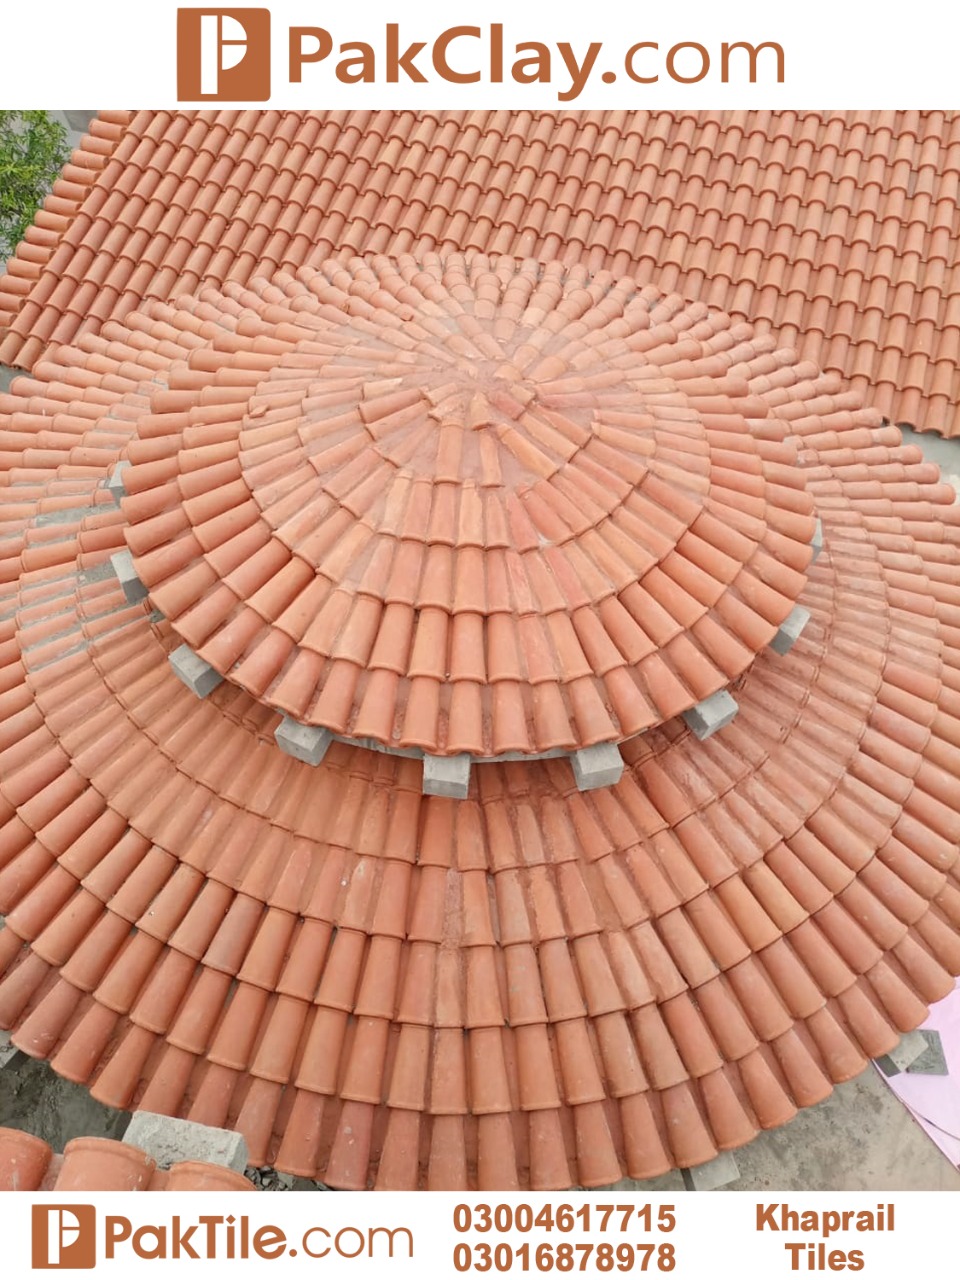 Clay Roof Tiles in Karachi